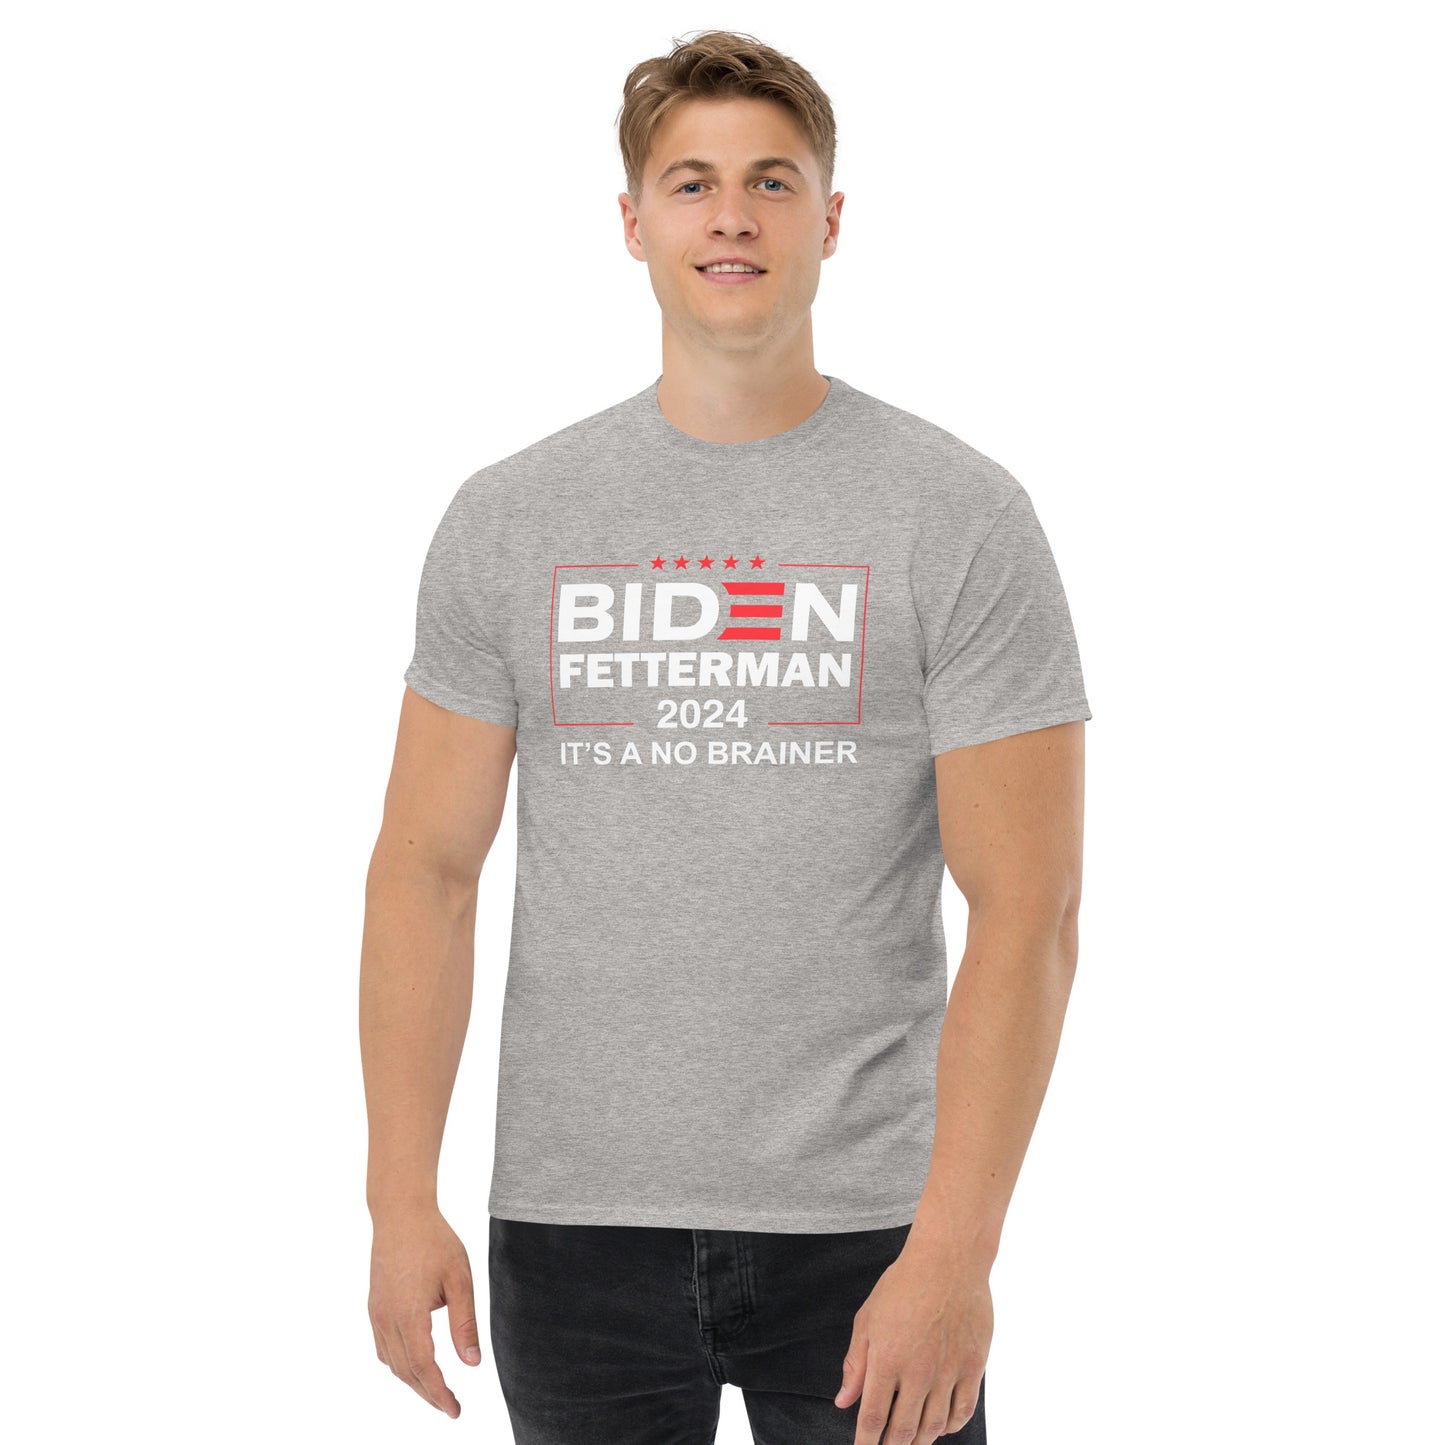 Biden Fetterman 2024 "Its's A No Brainer" T-Shirt